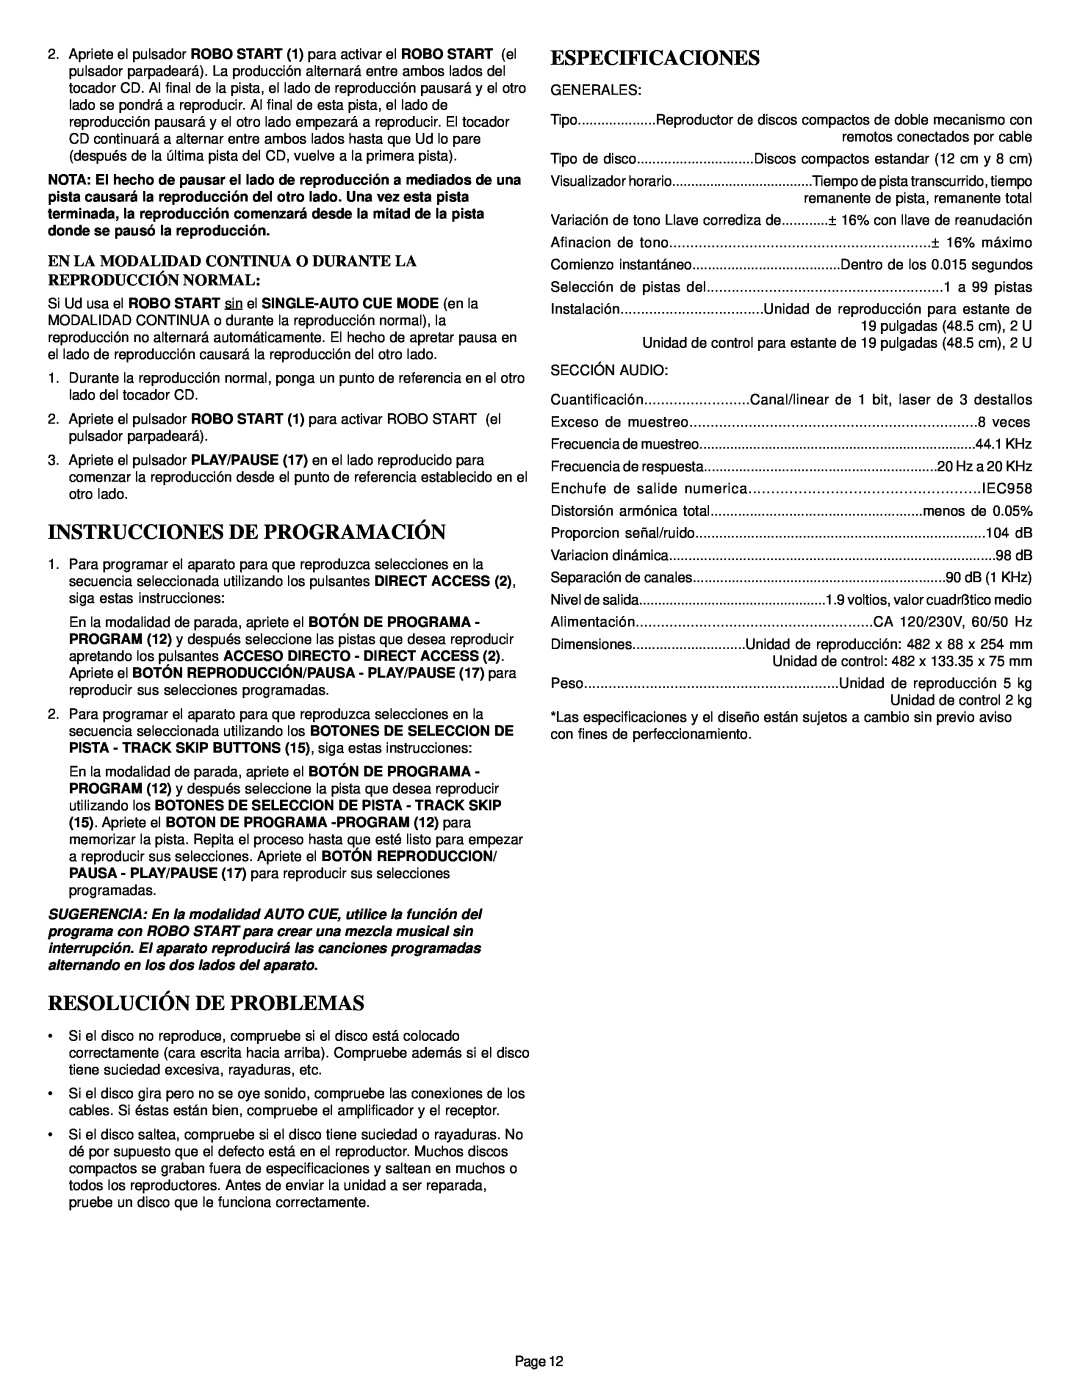 Gemini CD-340 manual Instrucciones De Programación, Resolución De Problemas, Especificaciones 